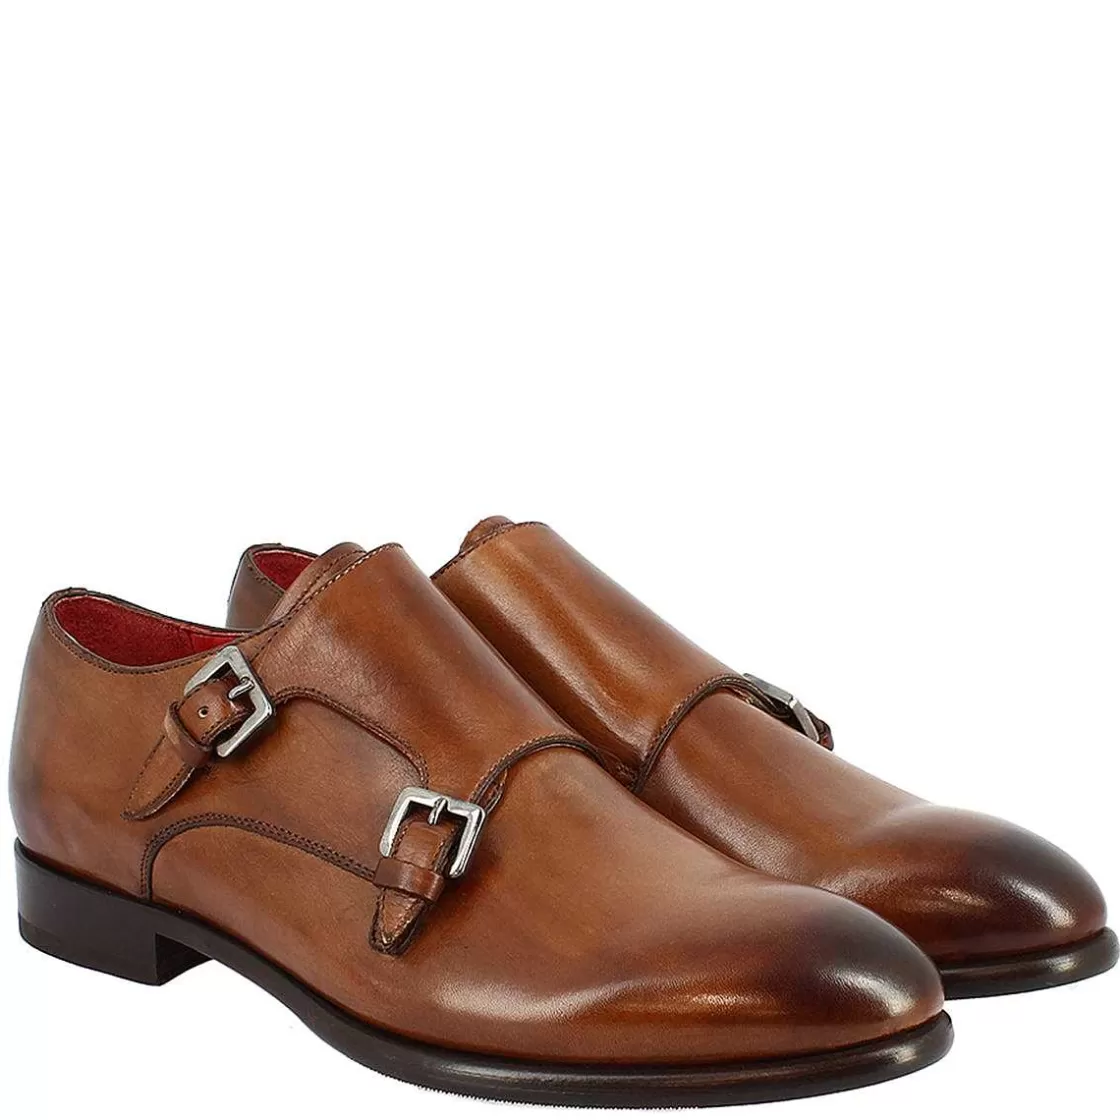 Leonardo Men'S Double Buckle Shoes In Brandy Leather Handmade Sale